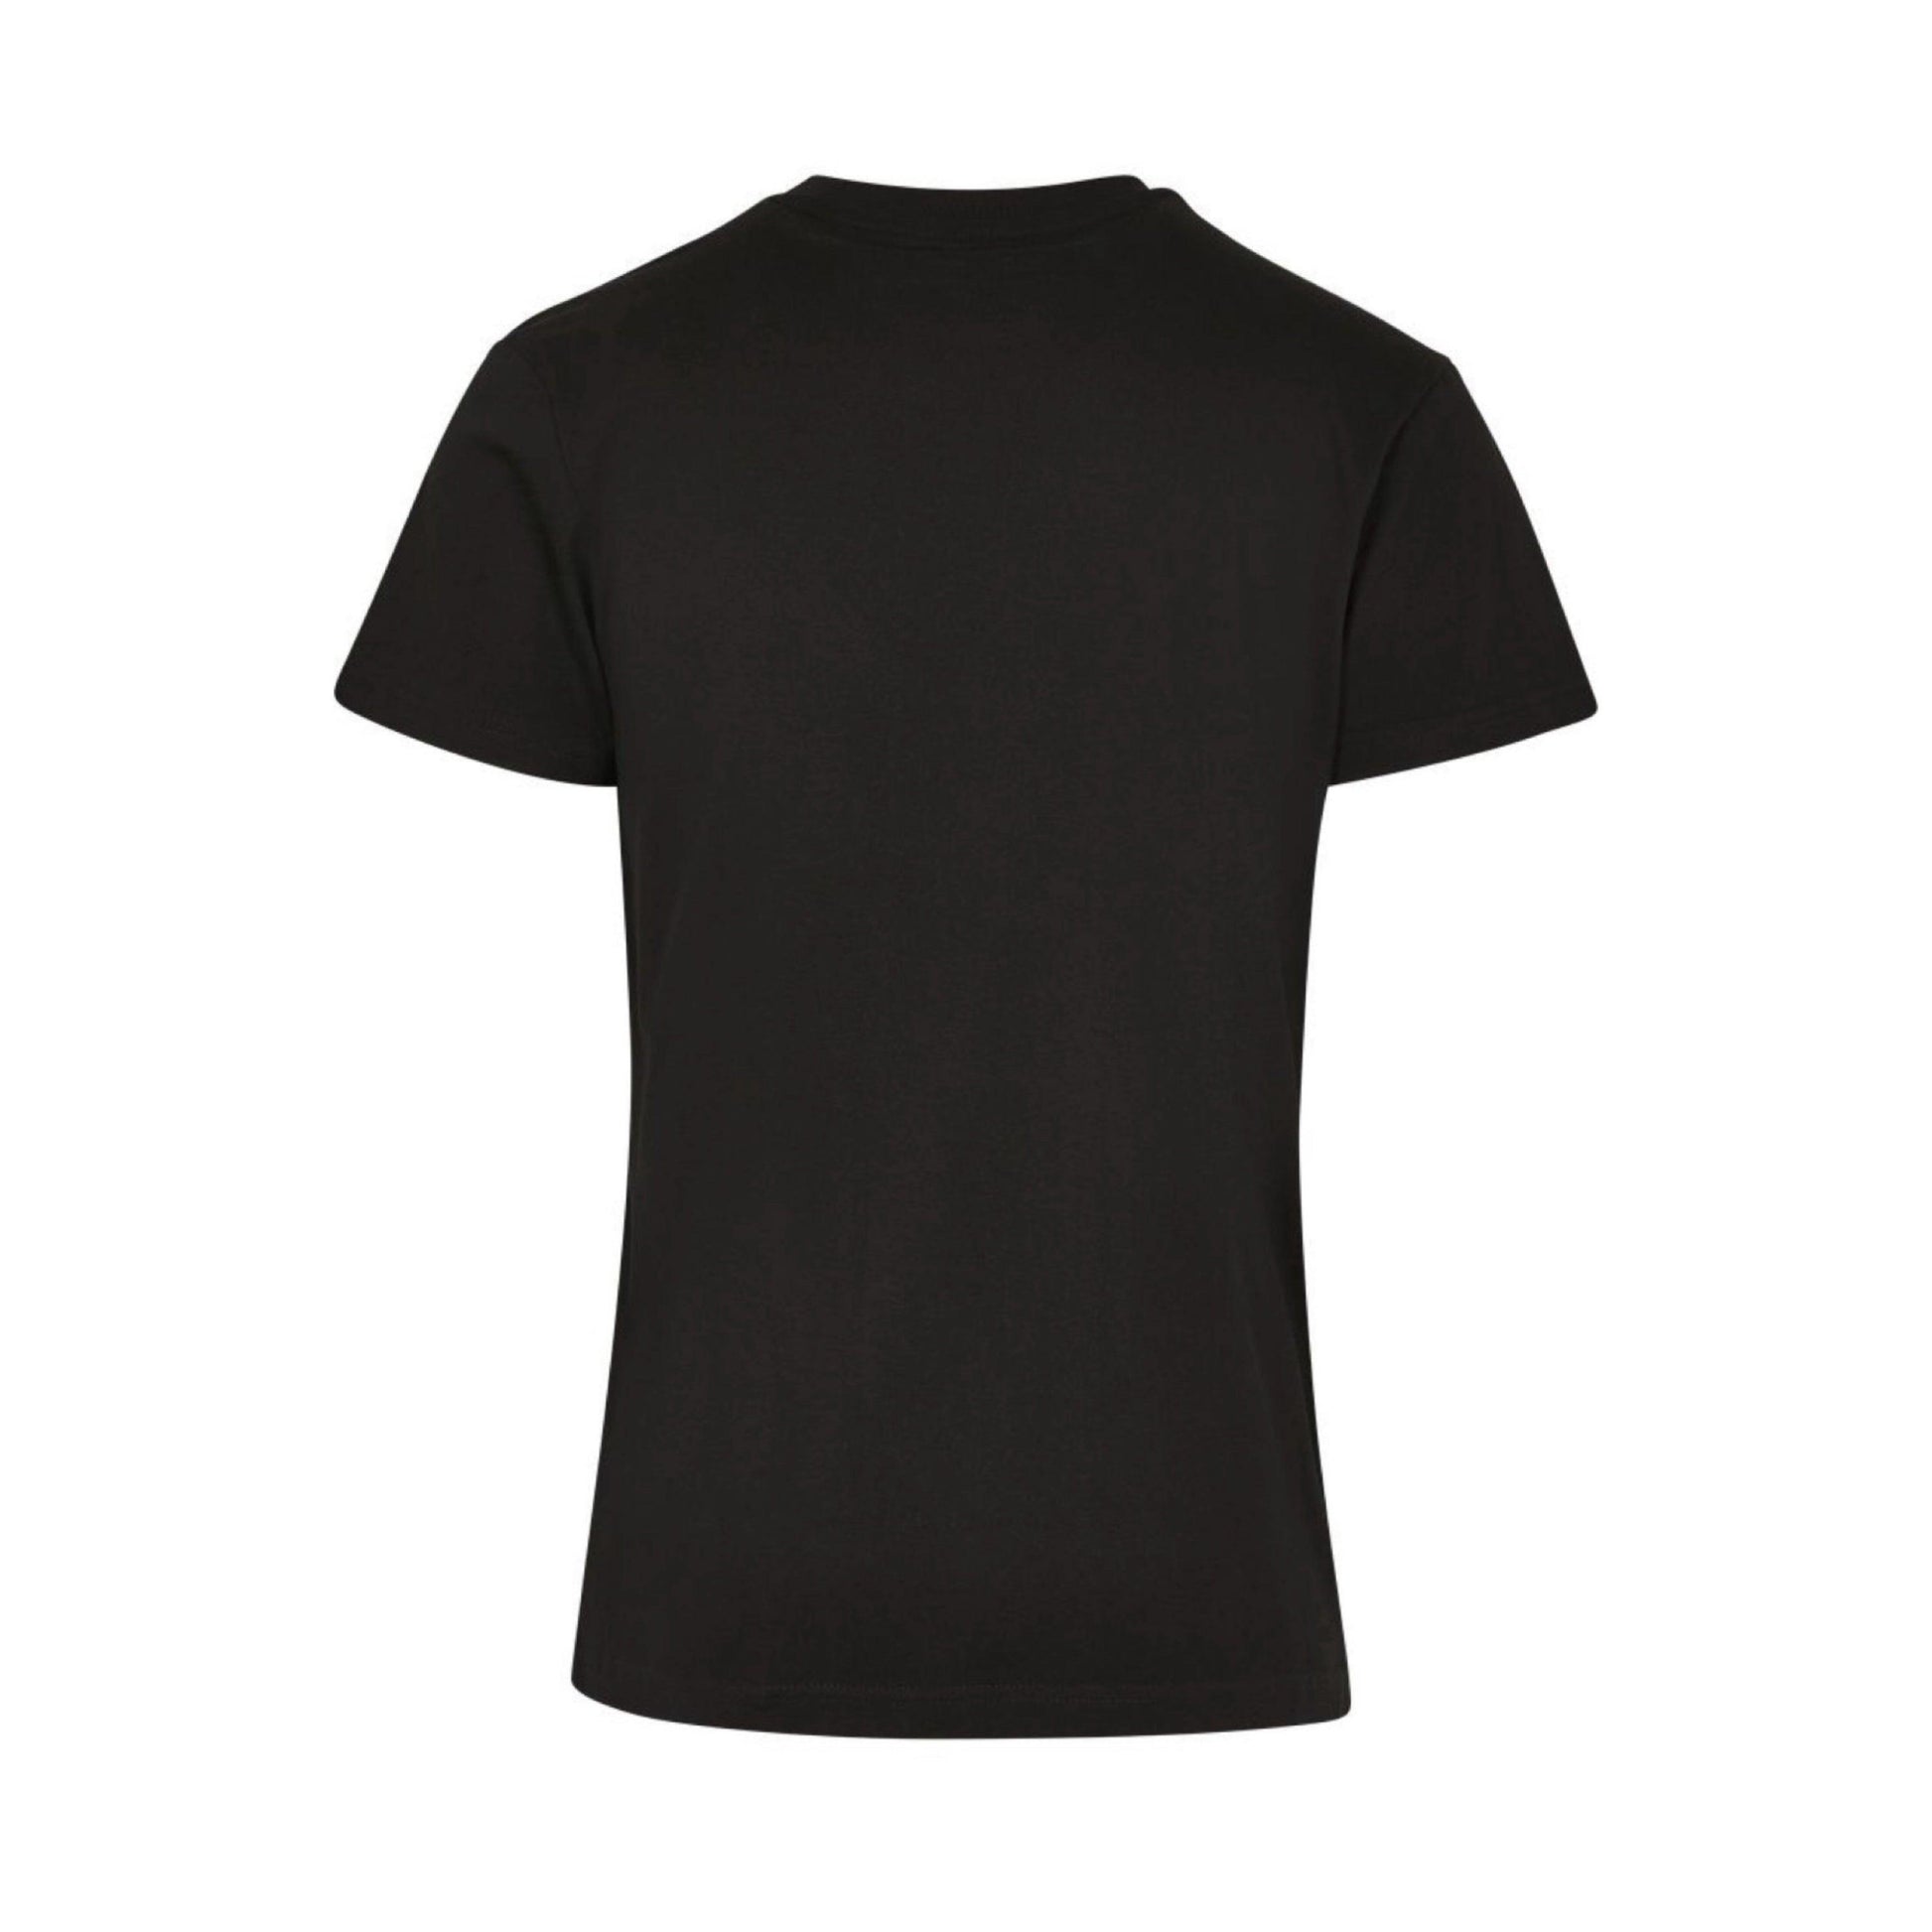 Premium Basic Shirt All Black 190 g/m² - DMANERA Atelier